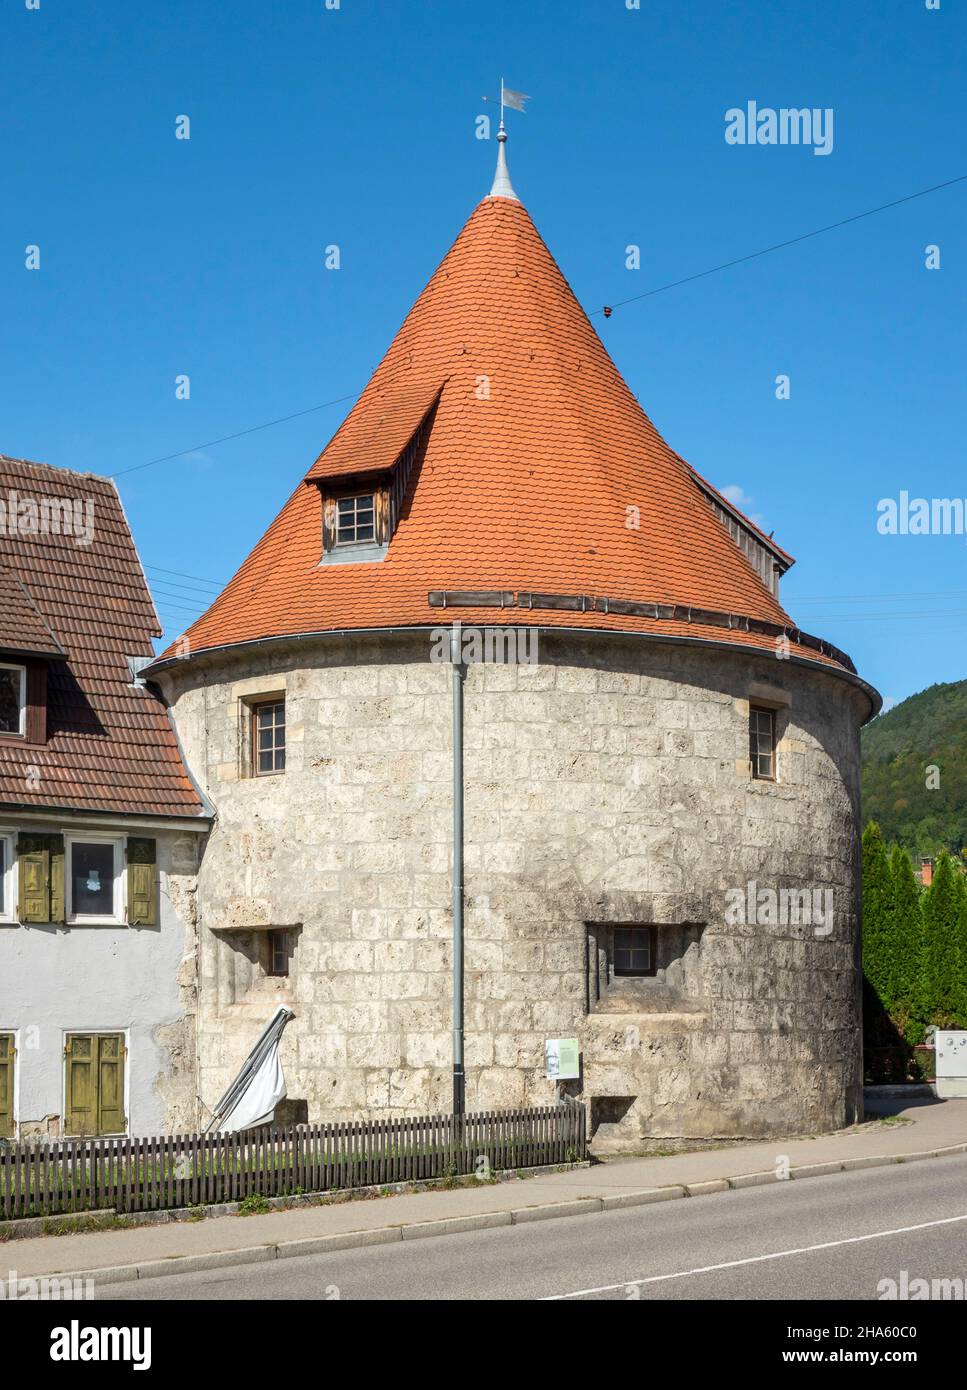 Der aus Tuffstein gebaute, dicke Turm ist der einzige der vier noch intakten Befestigungstürme der webervorstadt Bad urach, baden-württemberg, deutschland Stockfoto